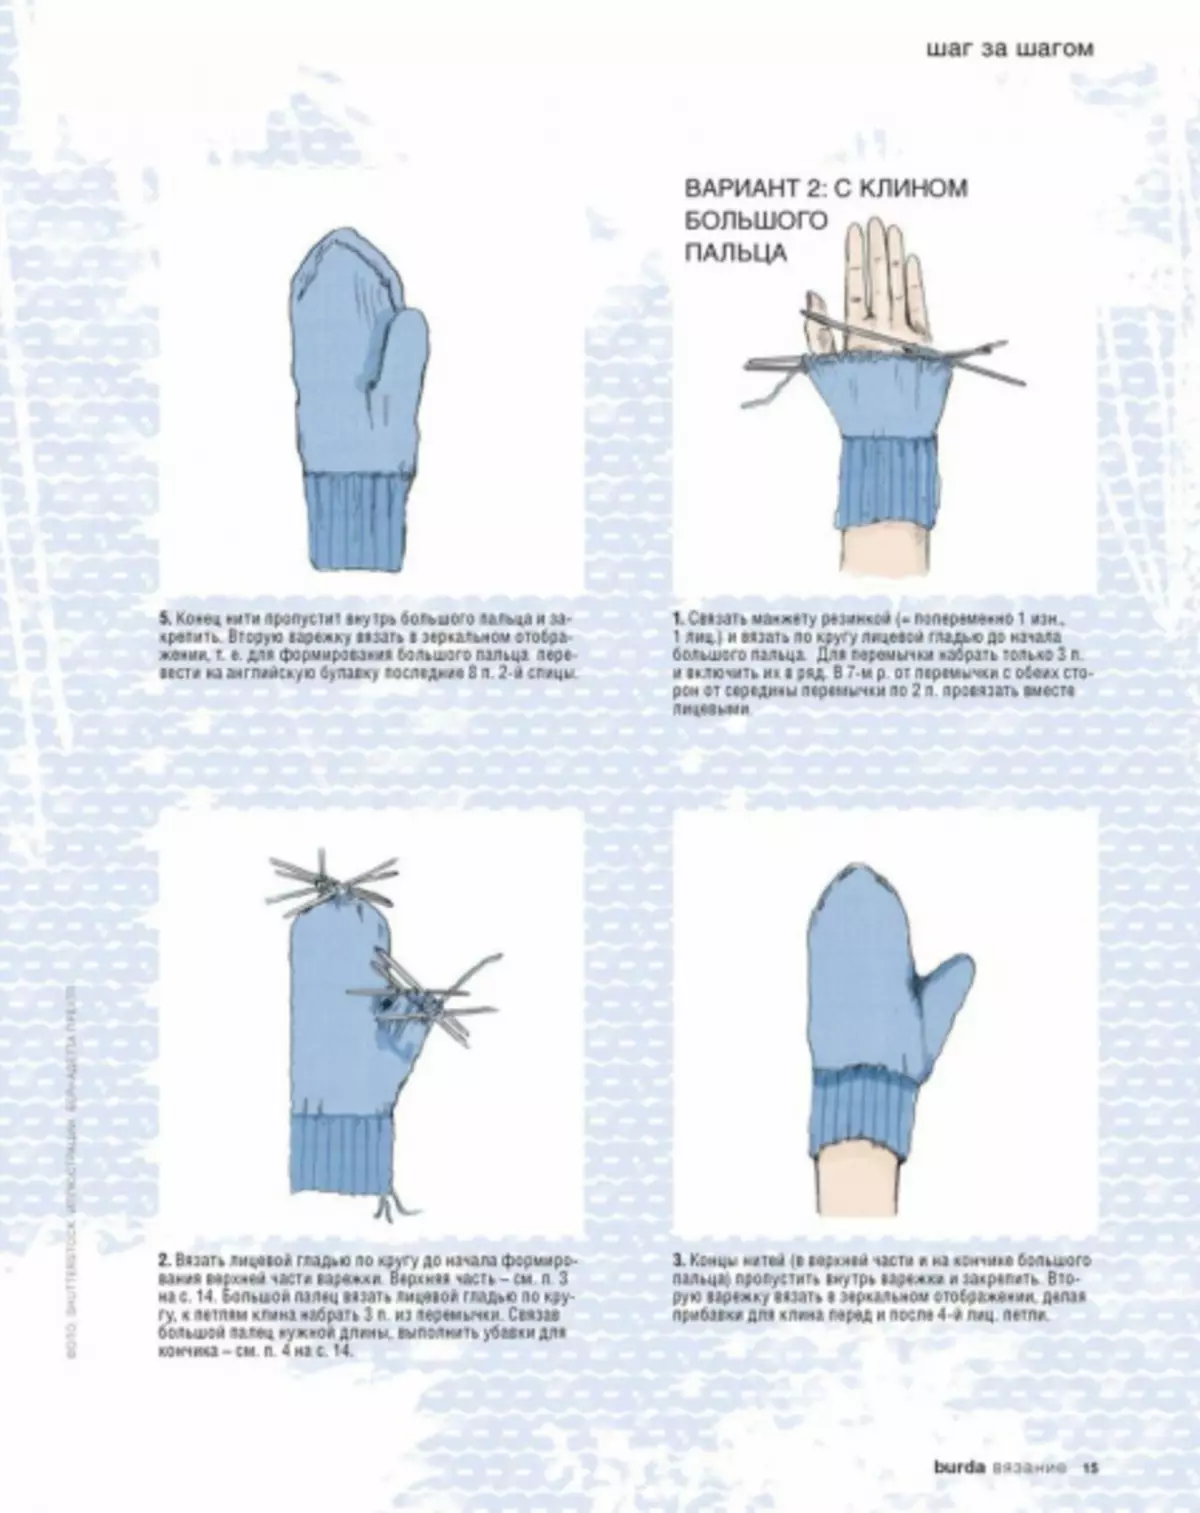 Варежка модели спицами. Как правильно вязать варежки на спицах для начинающих. Варежки на 4х спицах схема вязания. Вязание рукавиц на 2 х спицах схема. Вязать варежки спицами для начинающих 5 спицах.